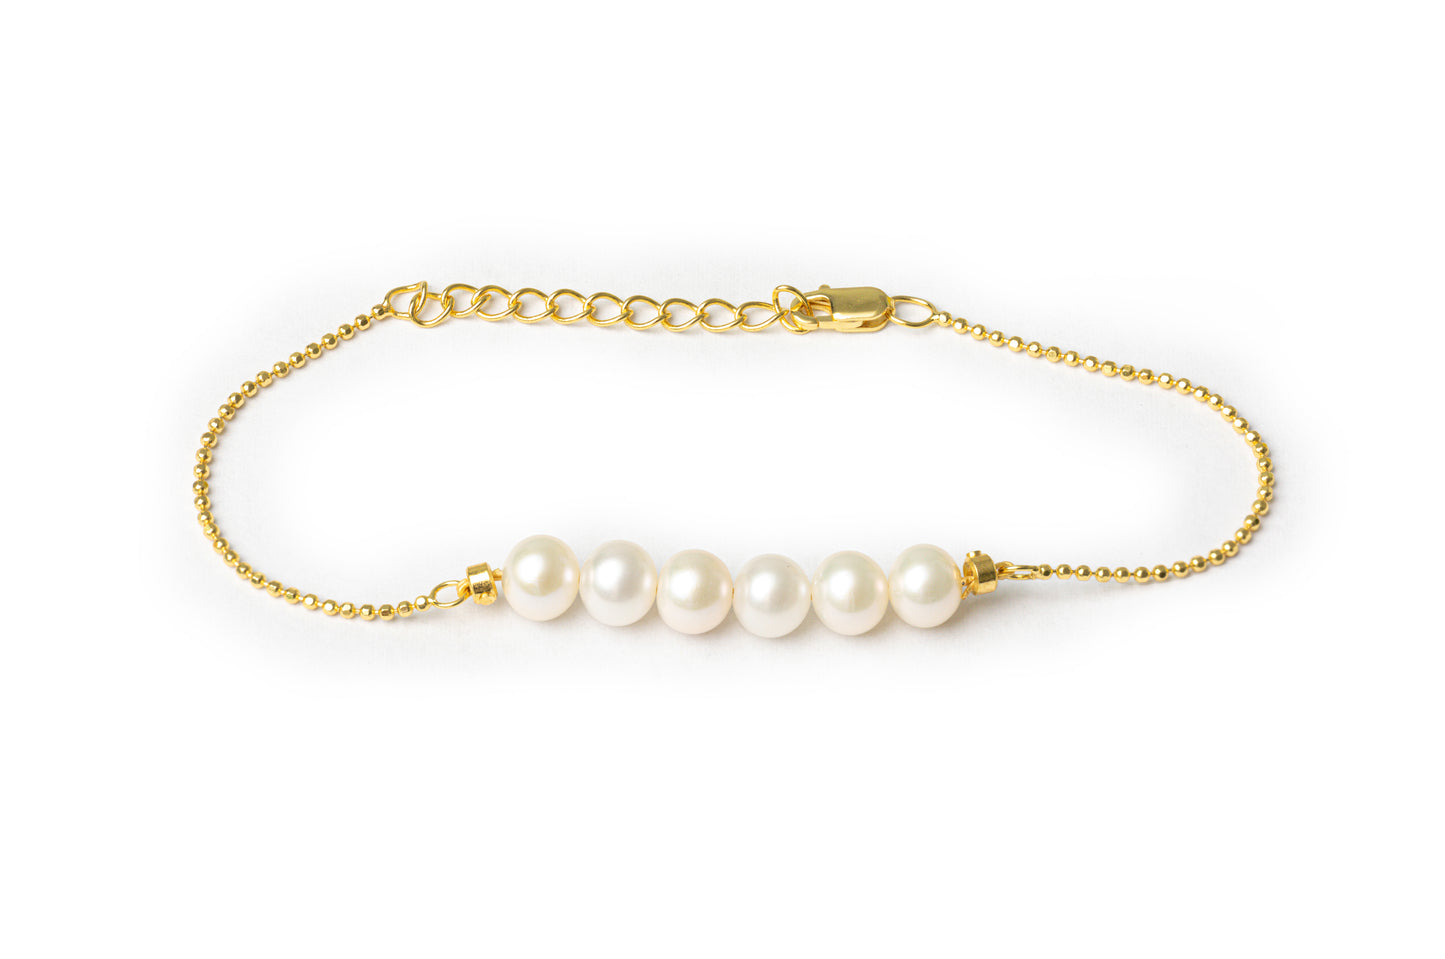 Multiple Pearl Bracelet  - Golden Freshwater Pearls Bracelet for Women (freshwater pearls,14K gold )